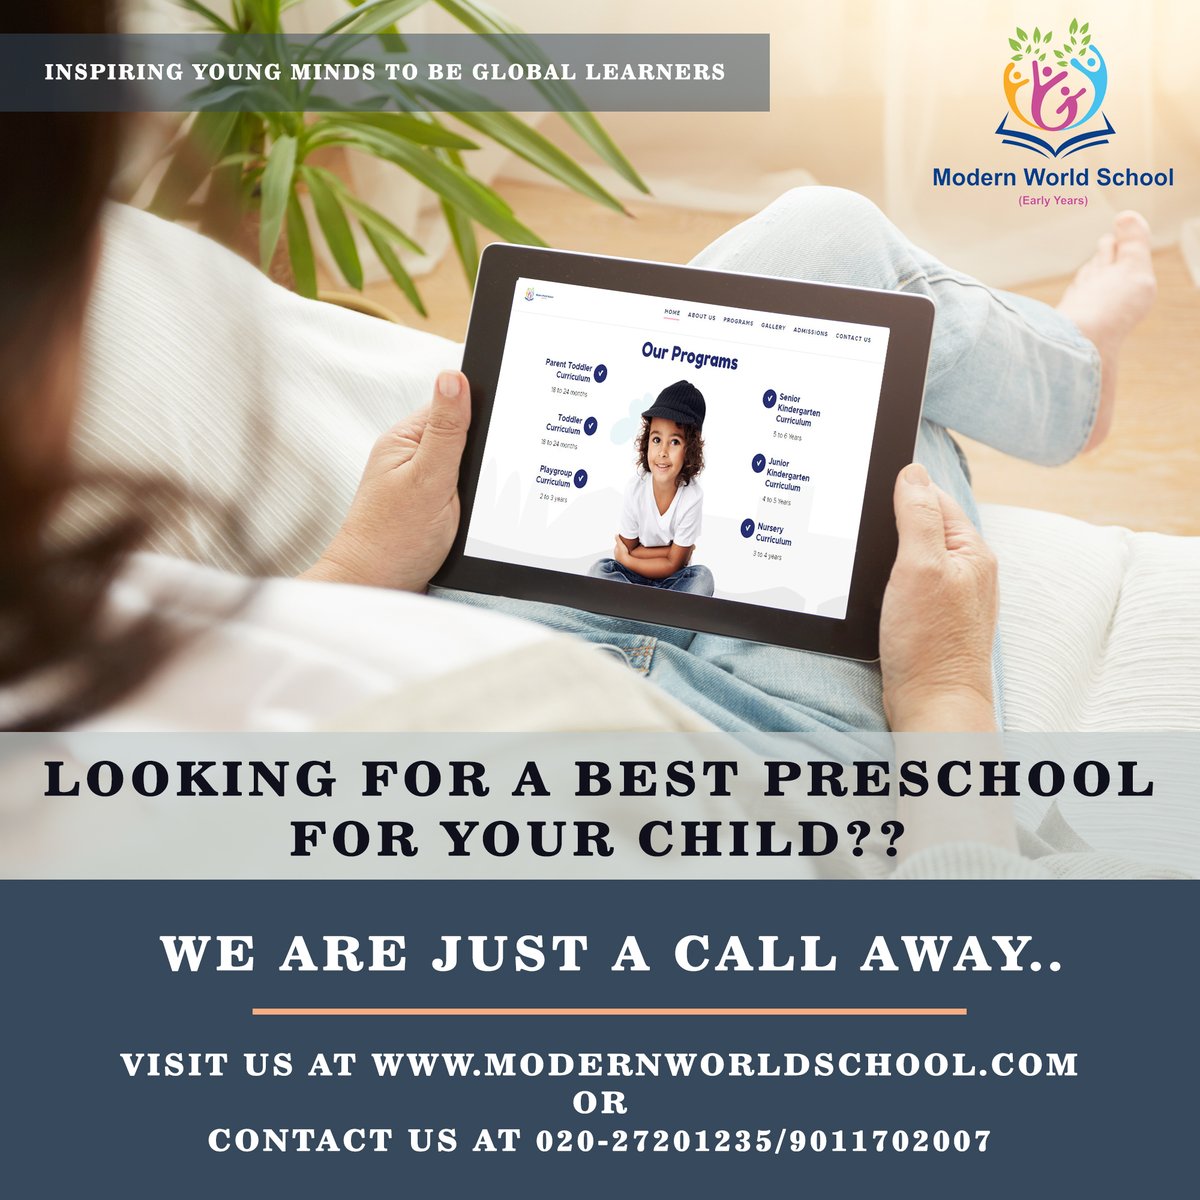 Looking for the best Preschool for your child? Contact us today!
Visit us at modernworldschool.com
#modernworldschool #AdmissionOpen2020 #admission2020 #preschooladmission #school2020 #kindergarten #nursery #toddler